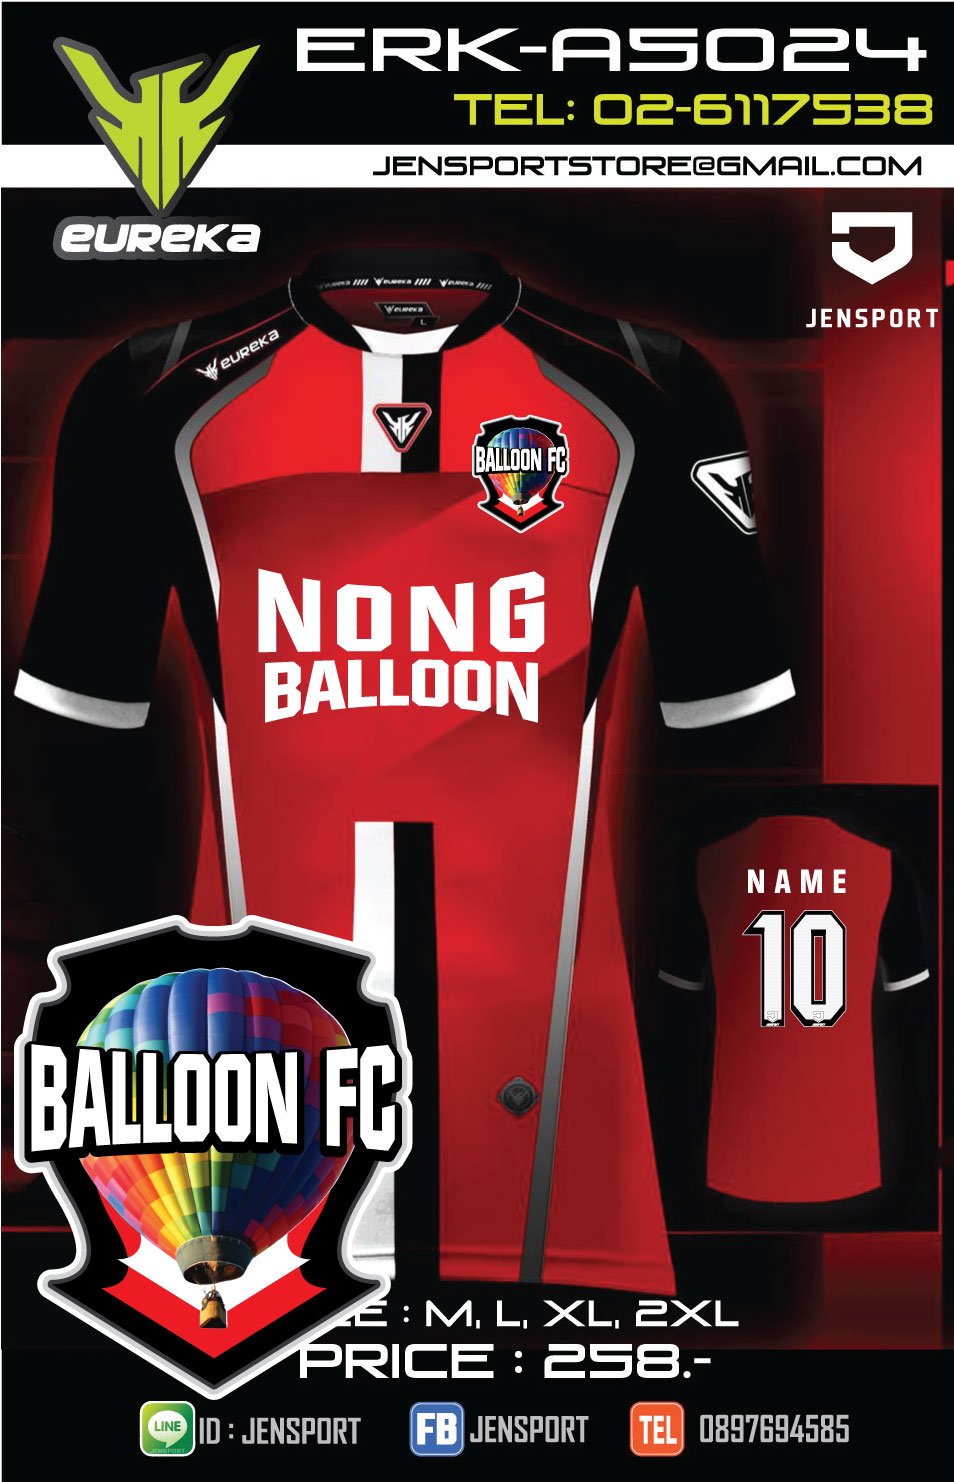 เสื้อฟุตบอล ยูเรก้ารุ่น A5024 สีแดงดำ ทีม Balloon fc